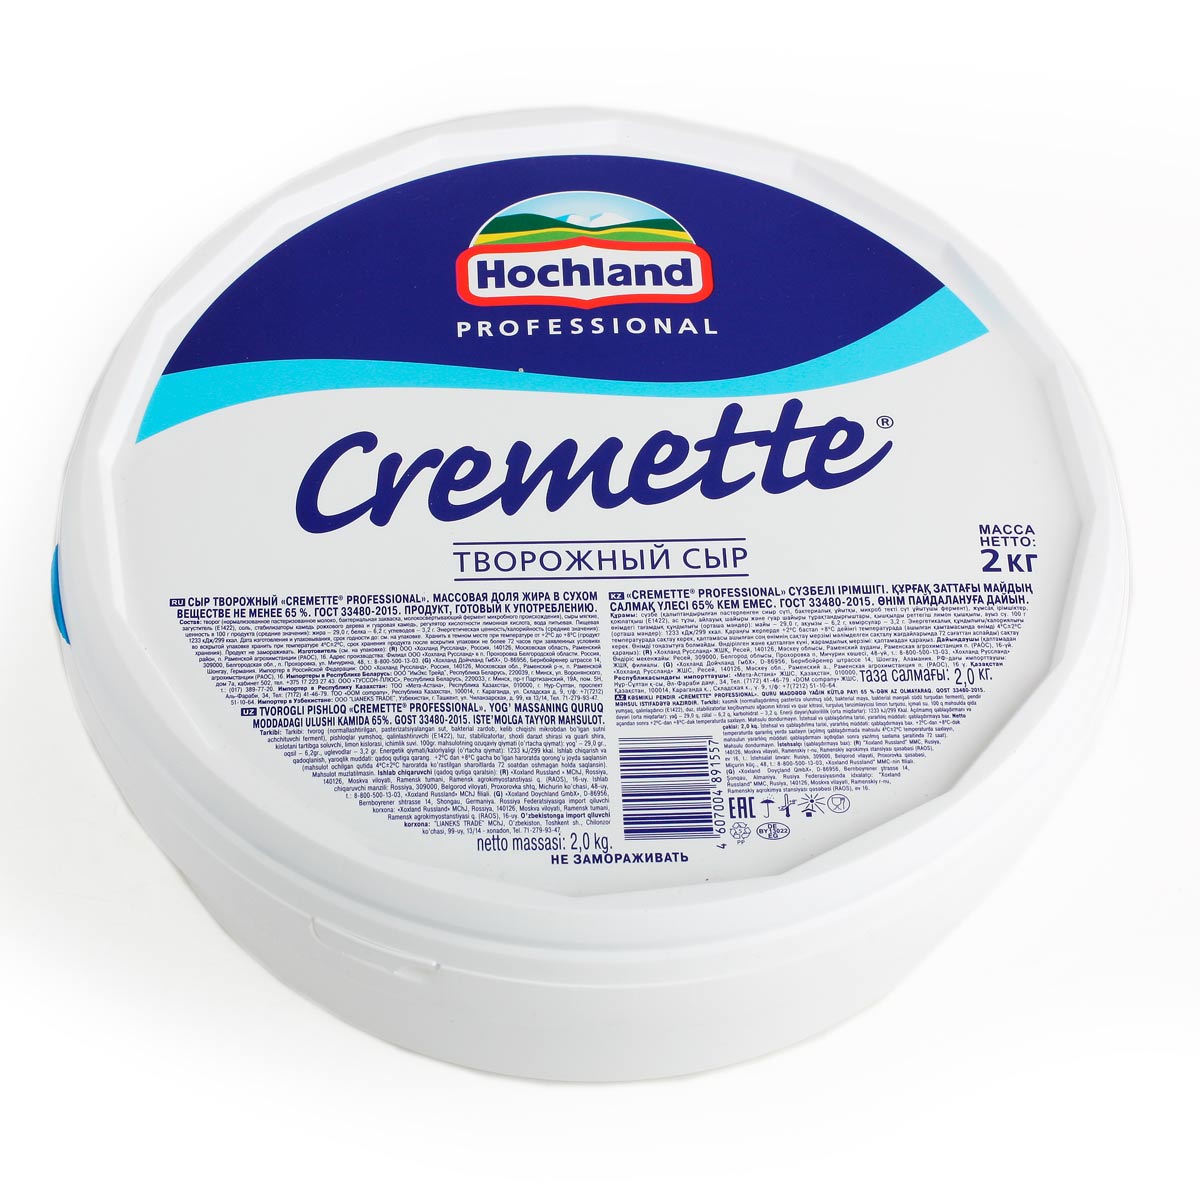 Хохланд сыр творожный Cremette Professional 65%